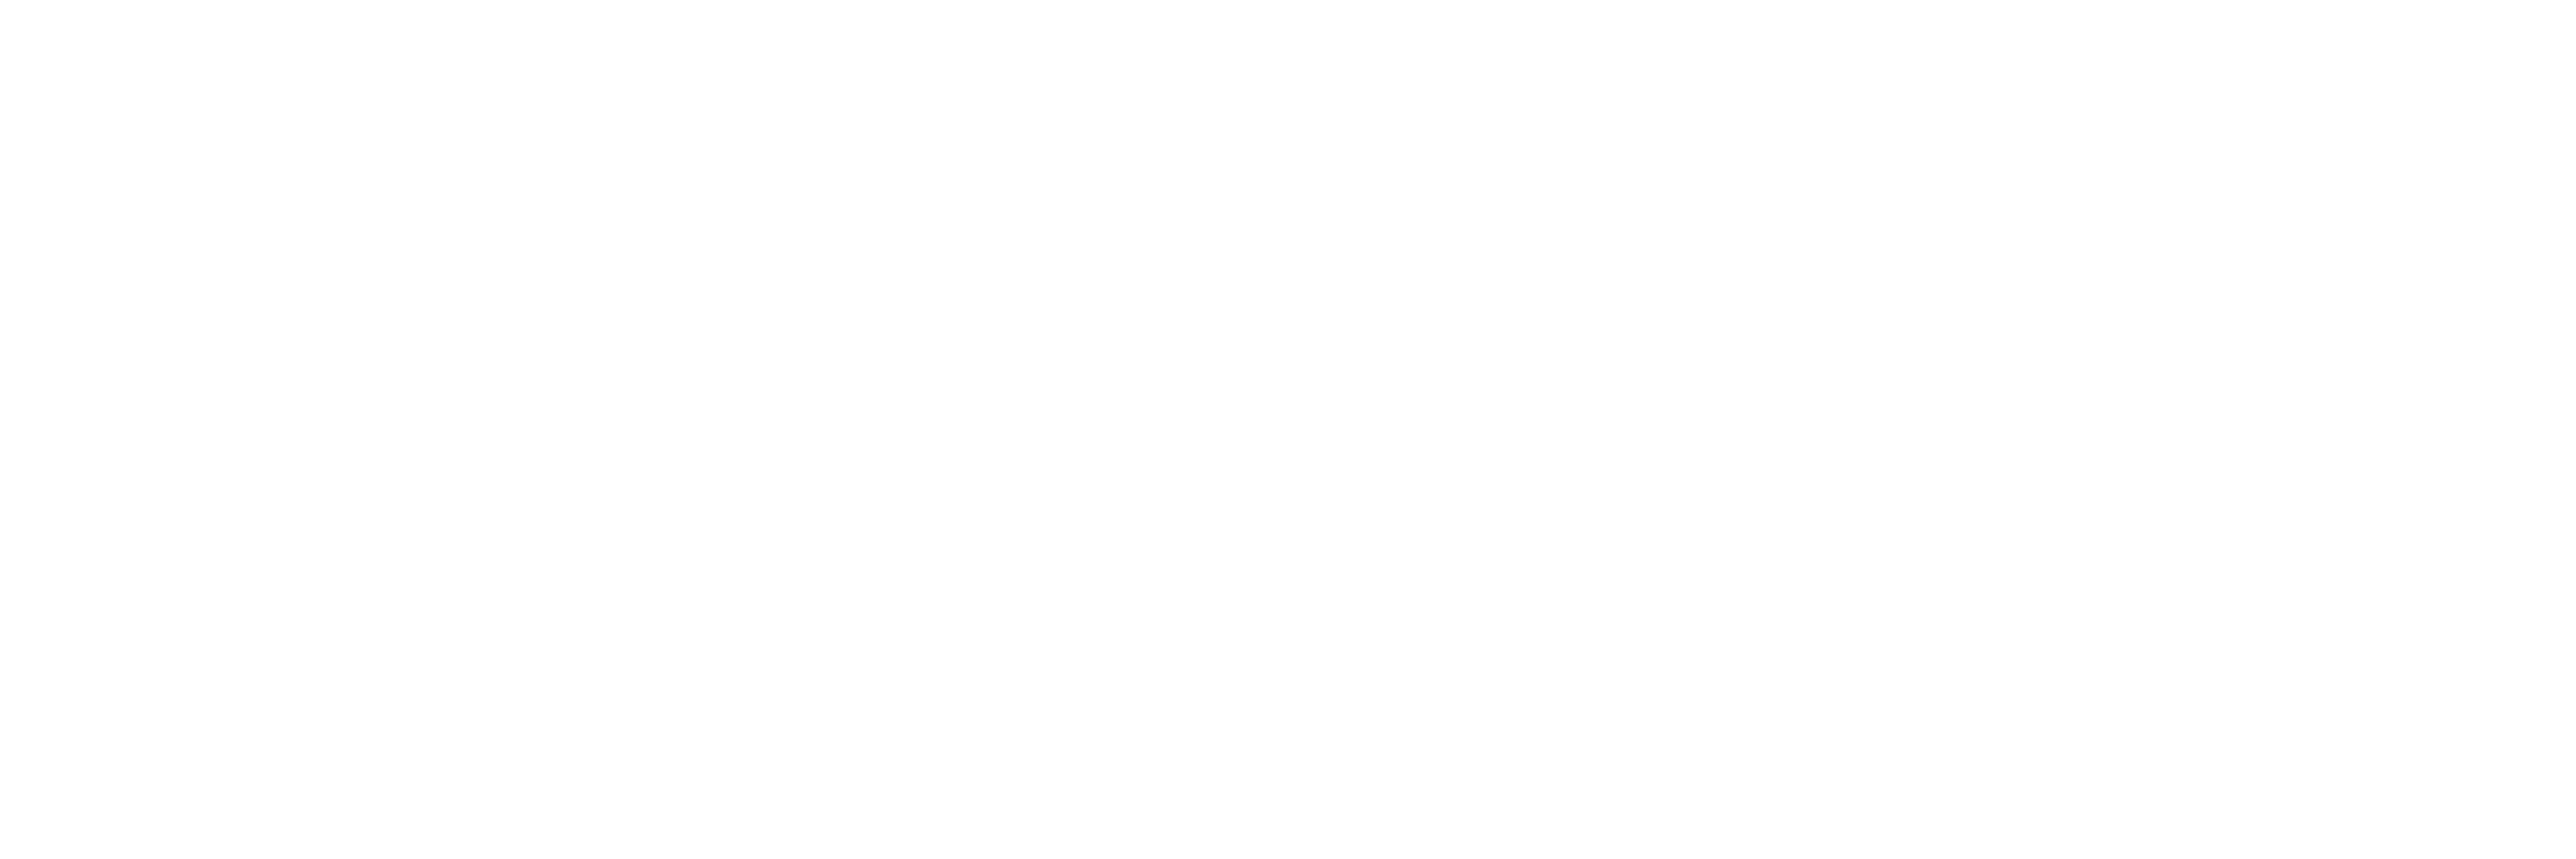 Caylum Trading Institute: News